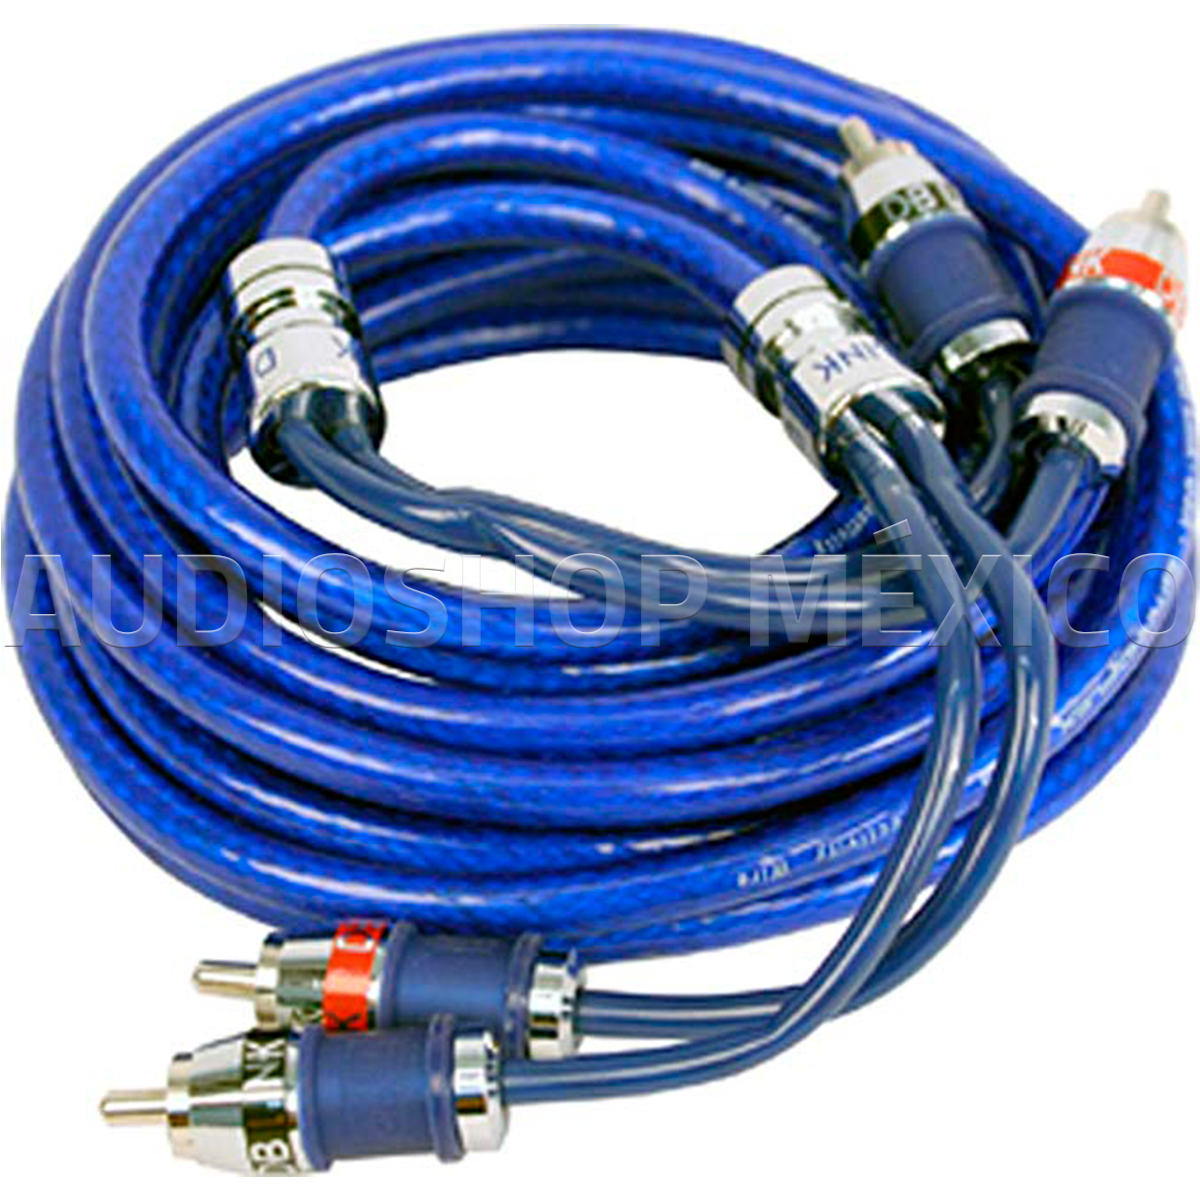 Cable RCA Ultraflexible DB Link SF15 15 pies 4.57 metros niquelada con